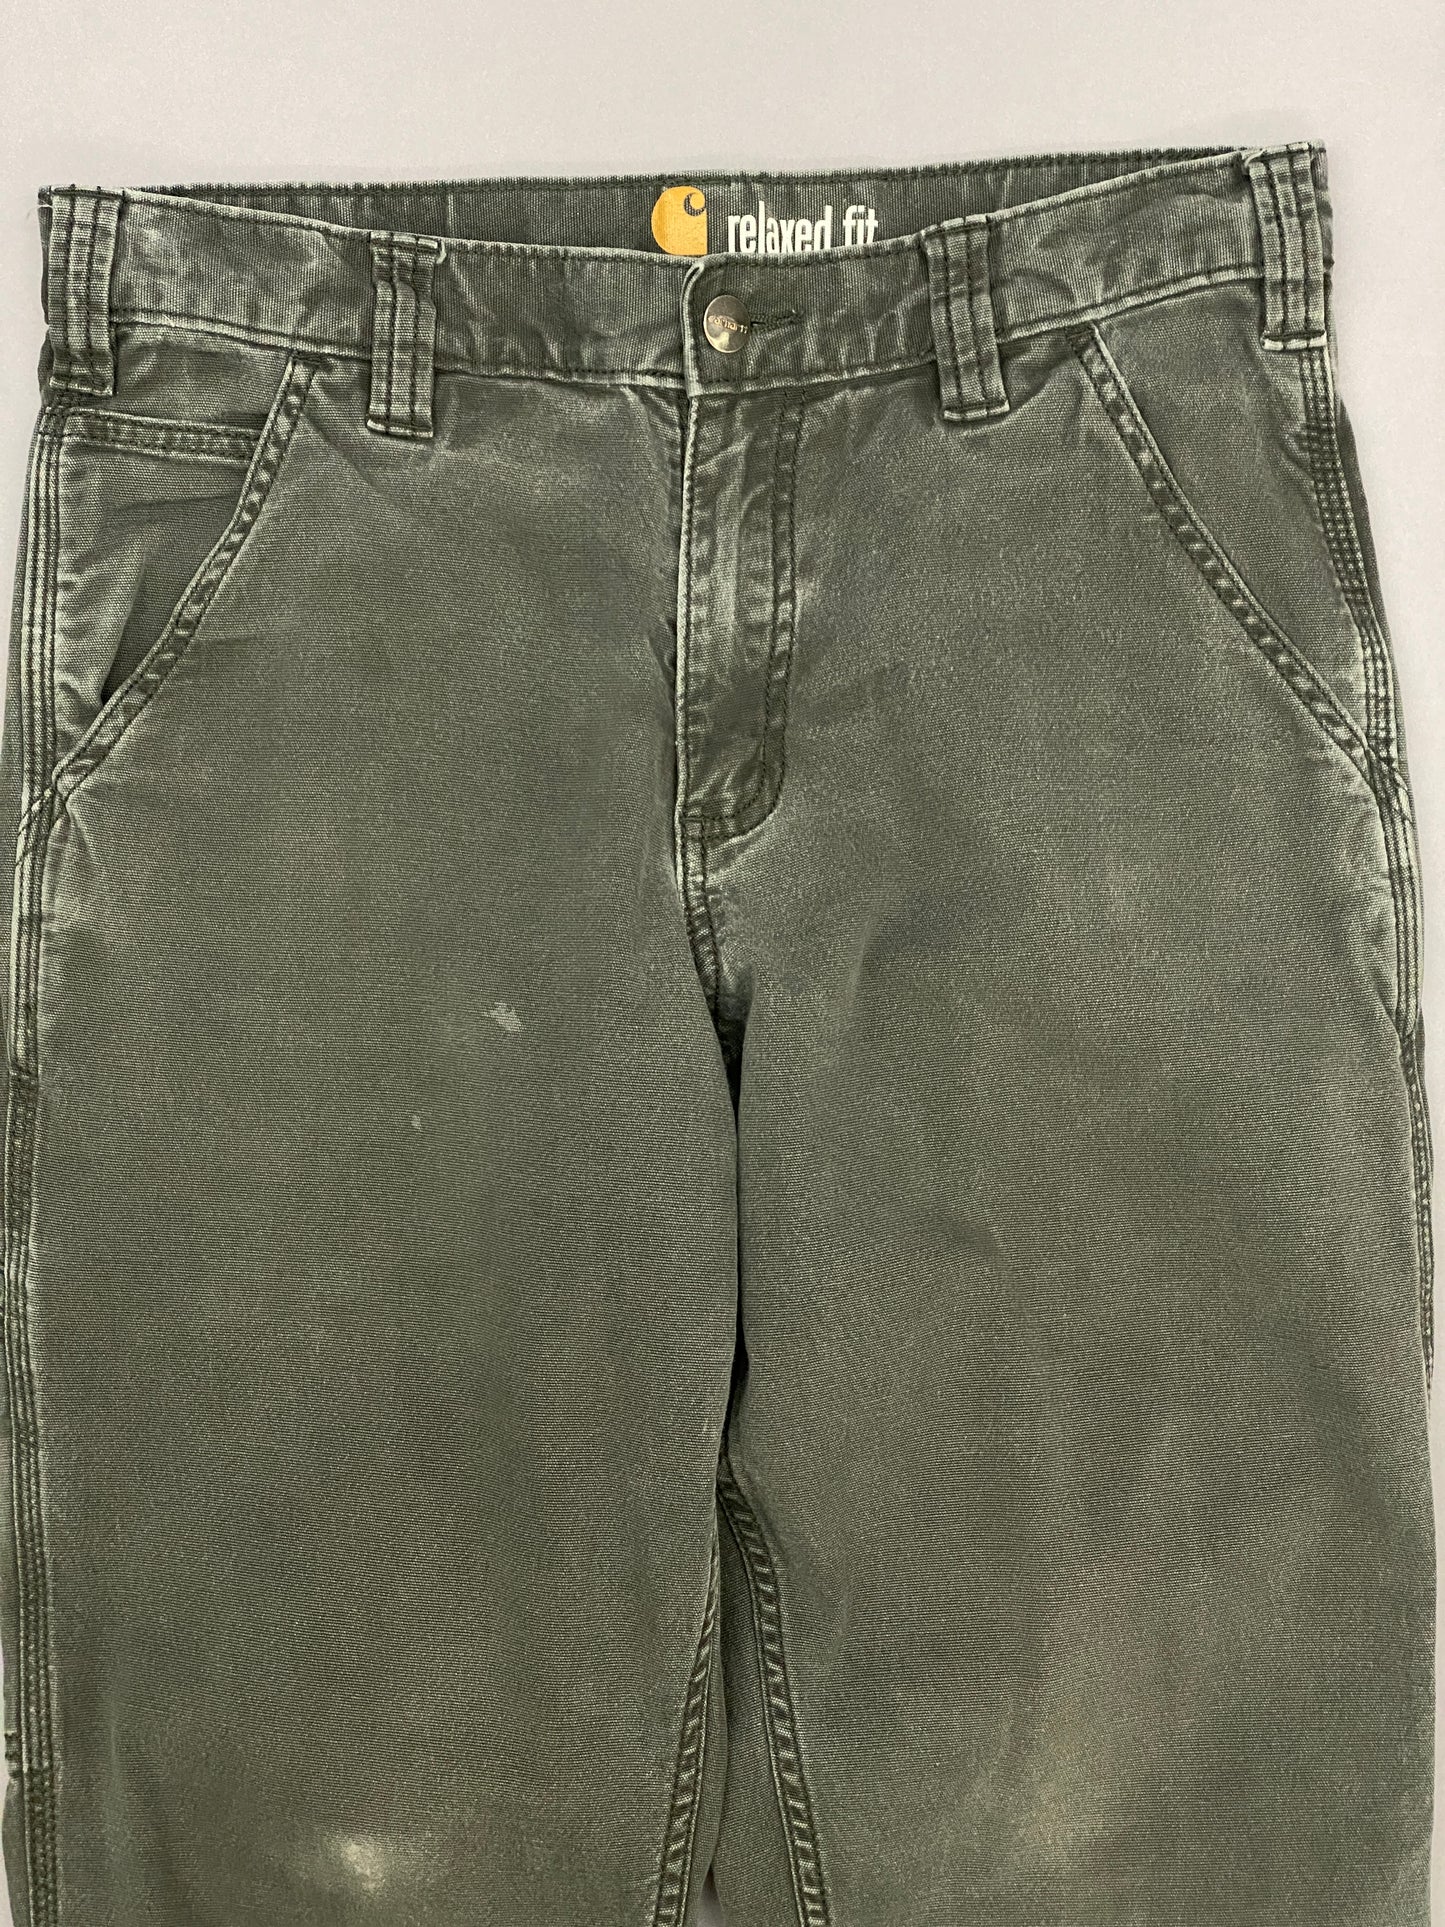 Pantalones Carhartt Carpenter - 31 x 30